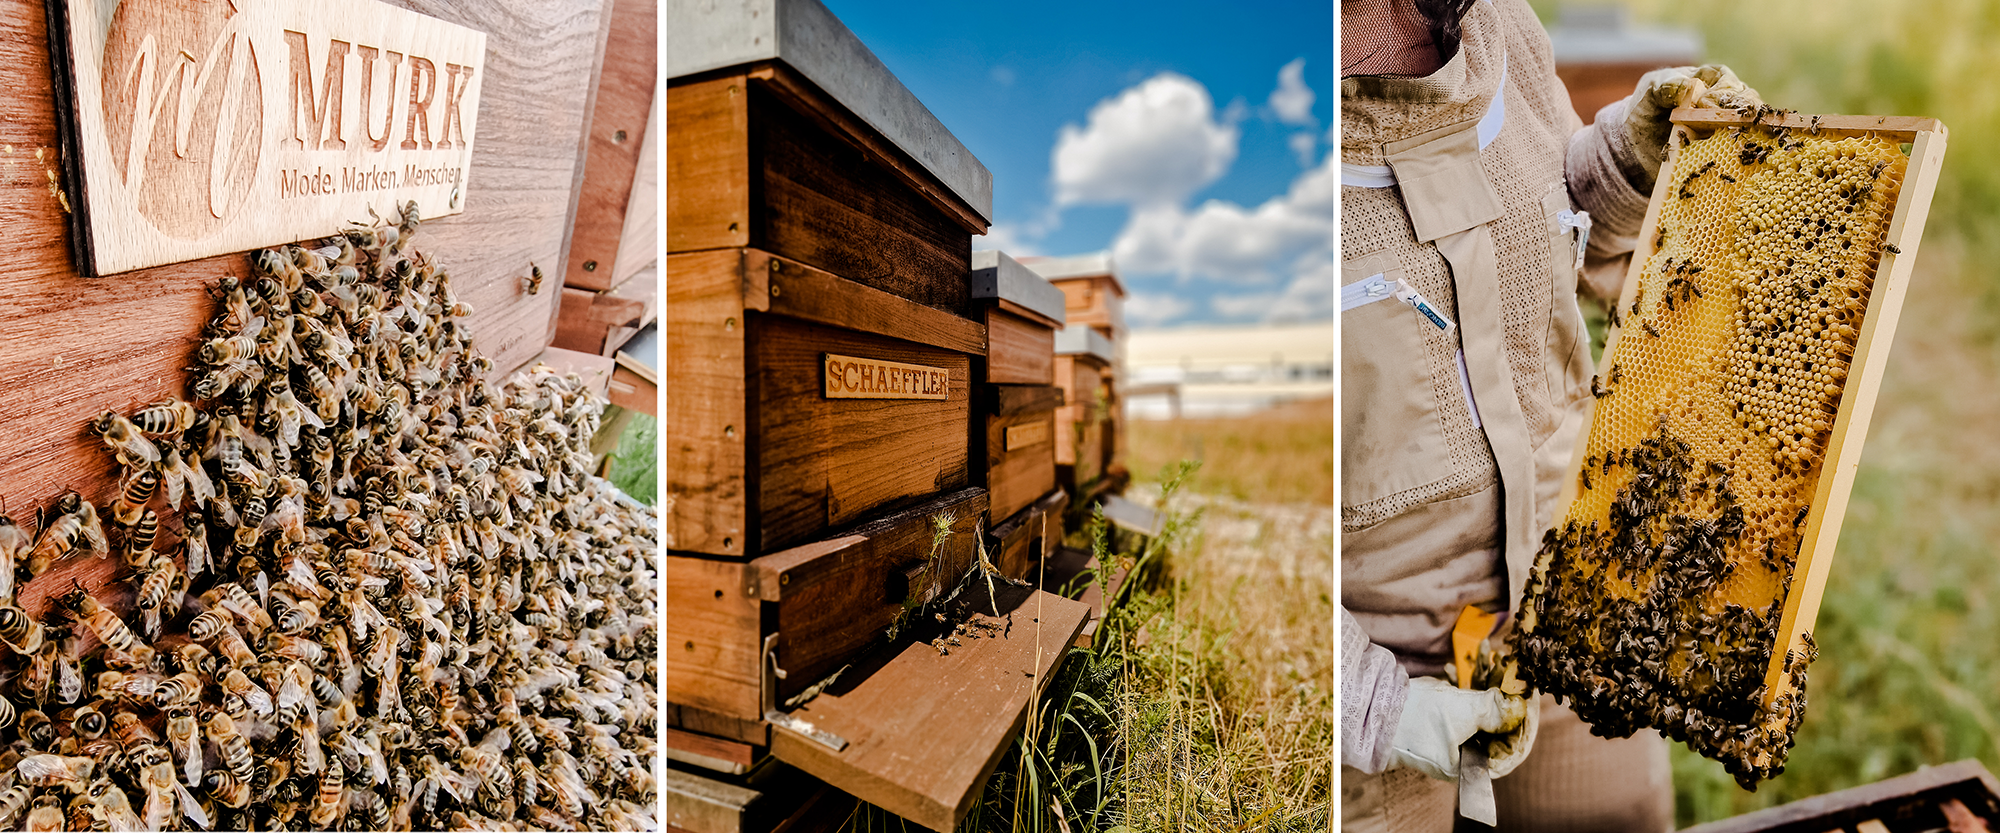 Trabajo de apicultura